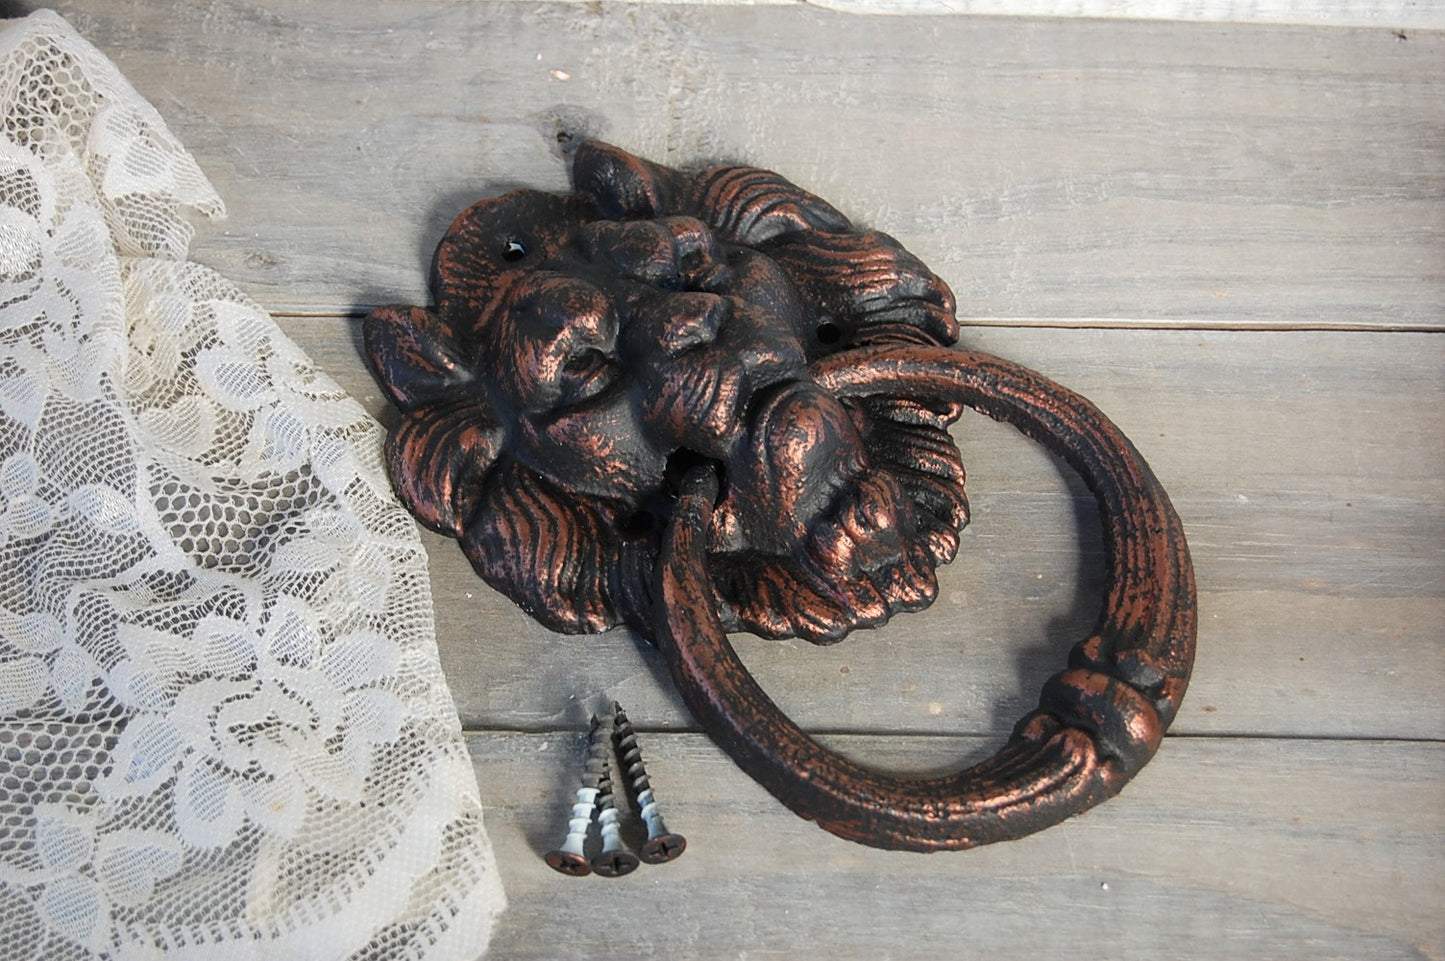 Lion's head door knocker